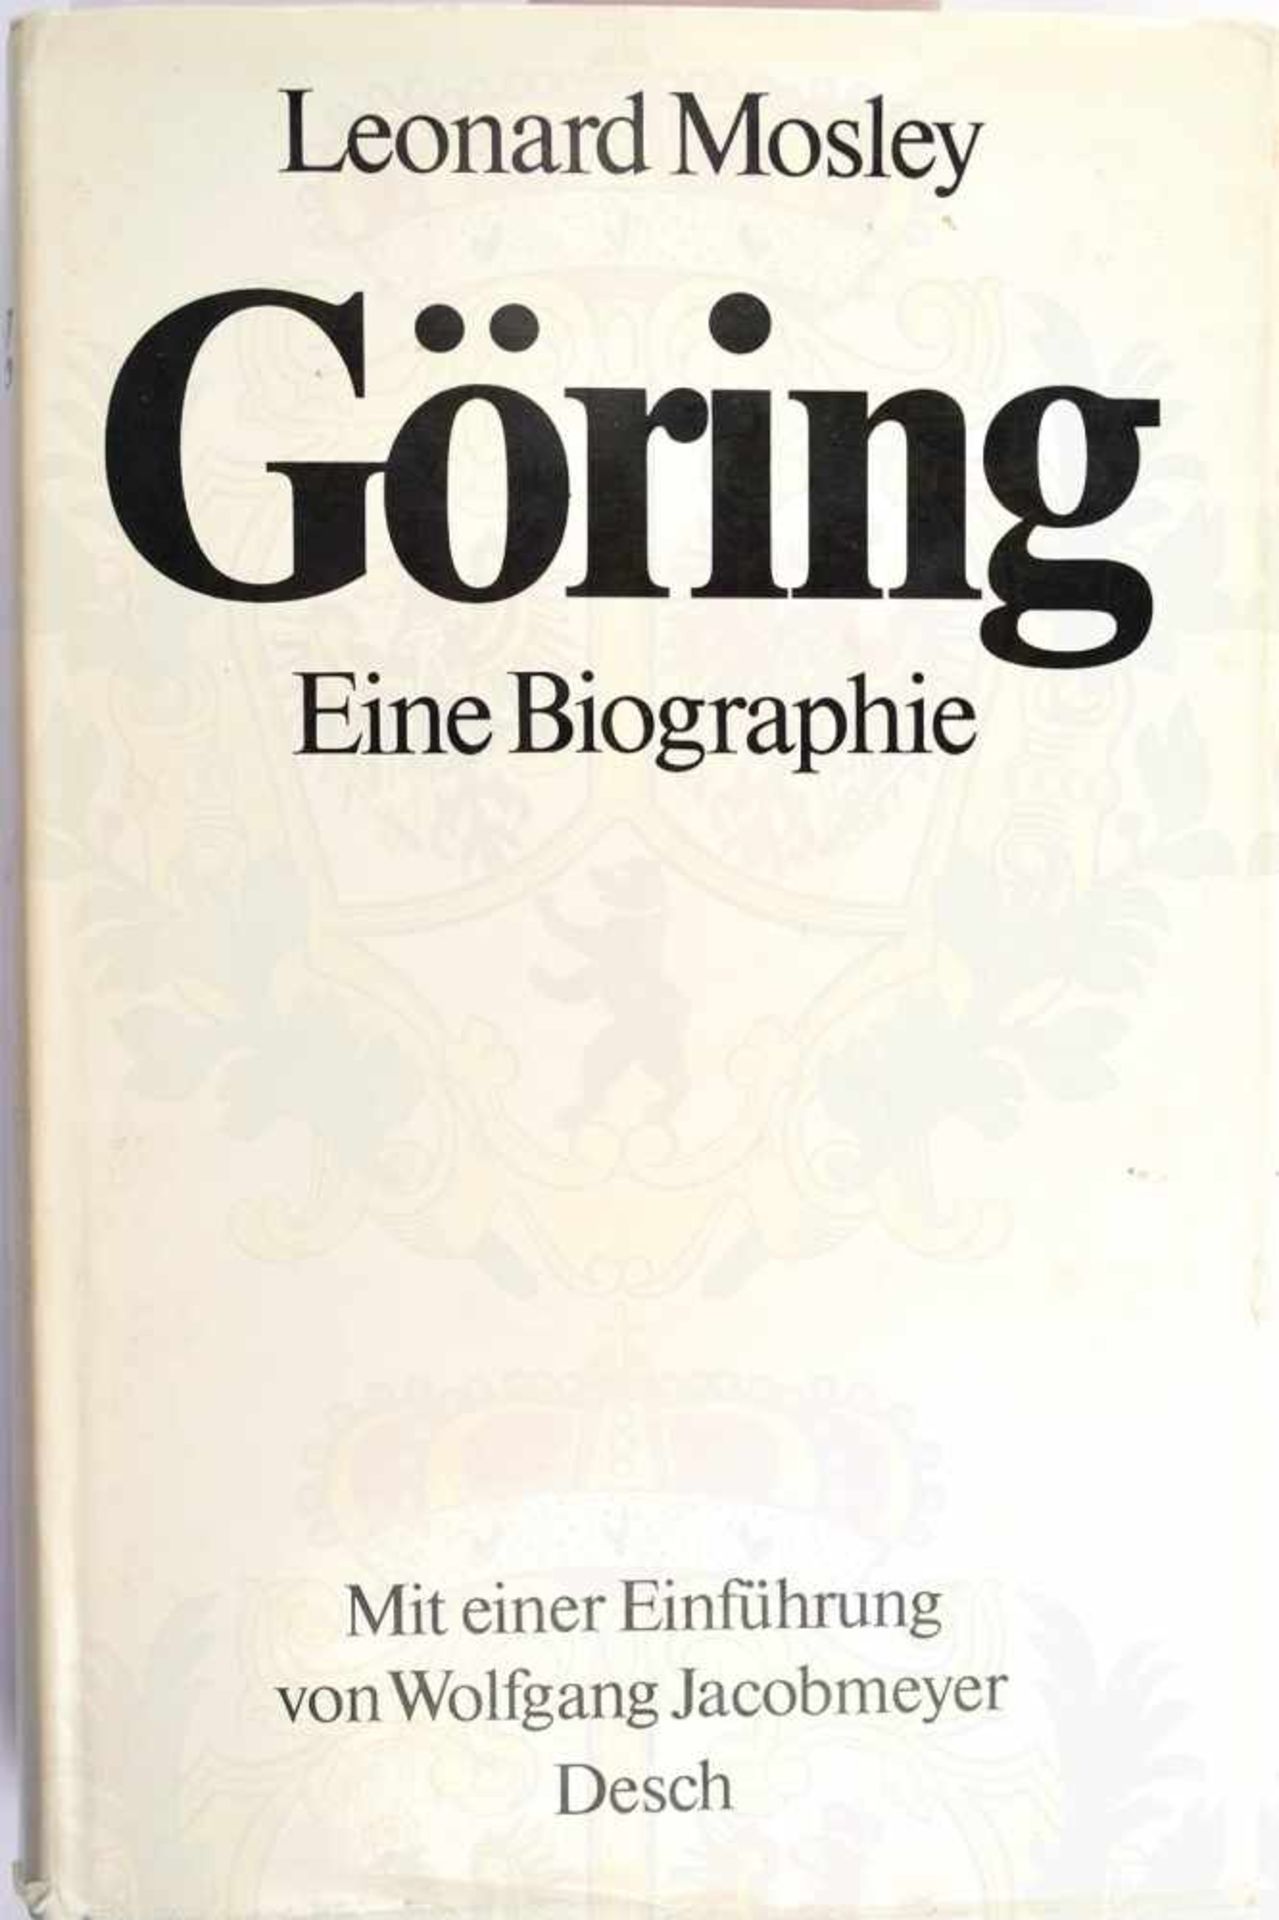 GÖRING - EINE BIOGRAPHIE, L. Mosley, München 1975, 360 S., Vorsatz m. Widmung f.e. Kameraden v.